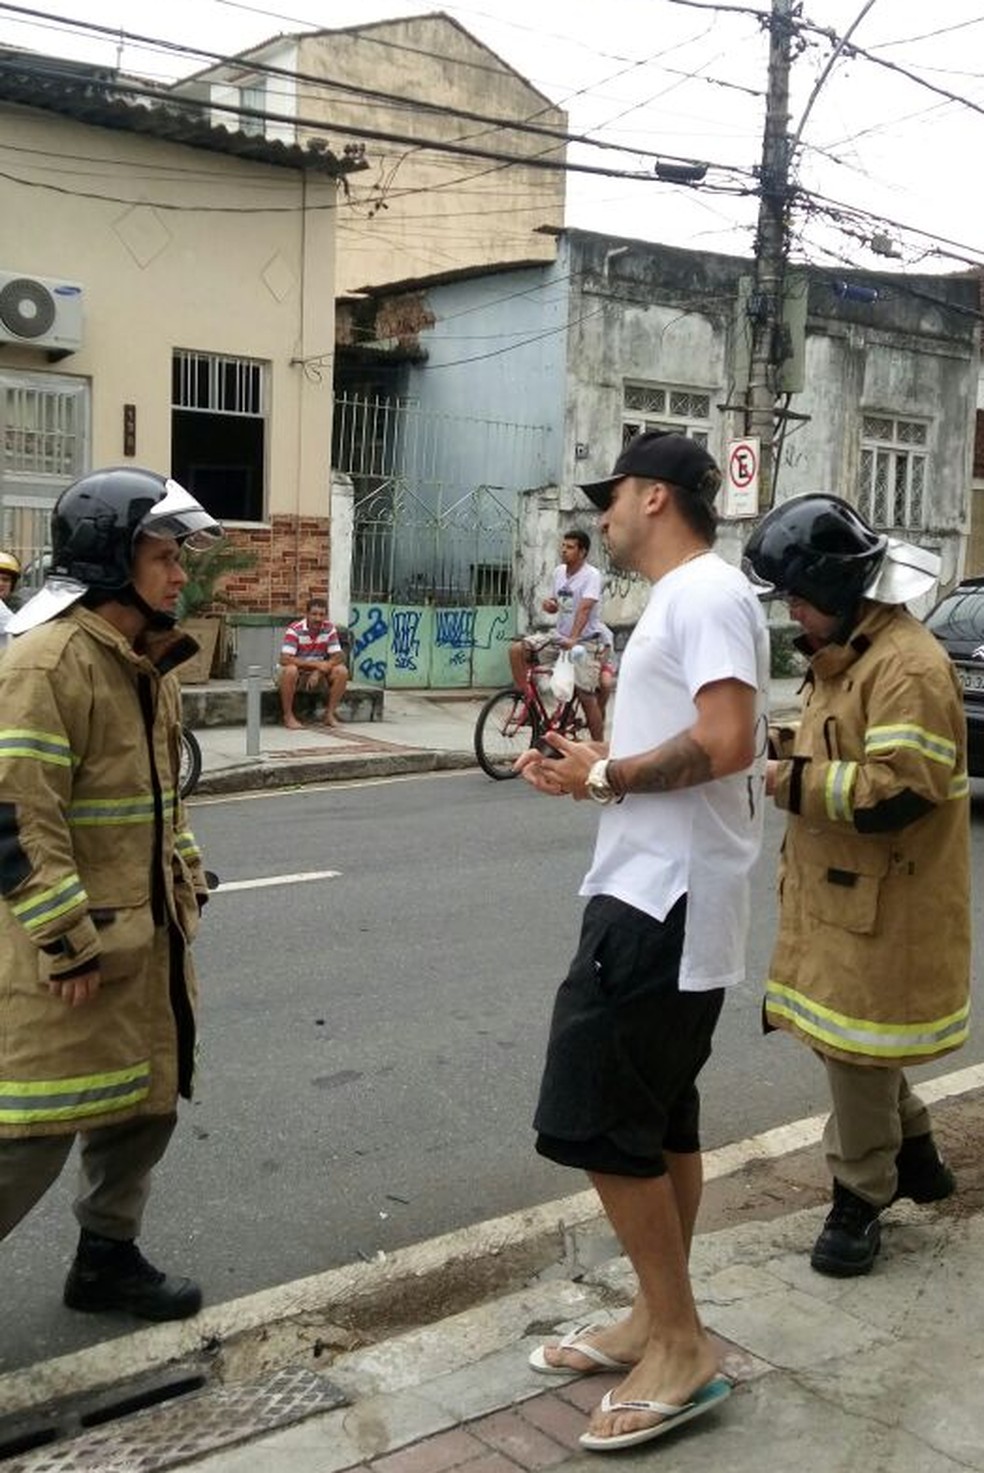 Victor Luis aparece em fotos conversando com bombeiros no local (Foto: Reprodução)